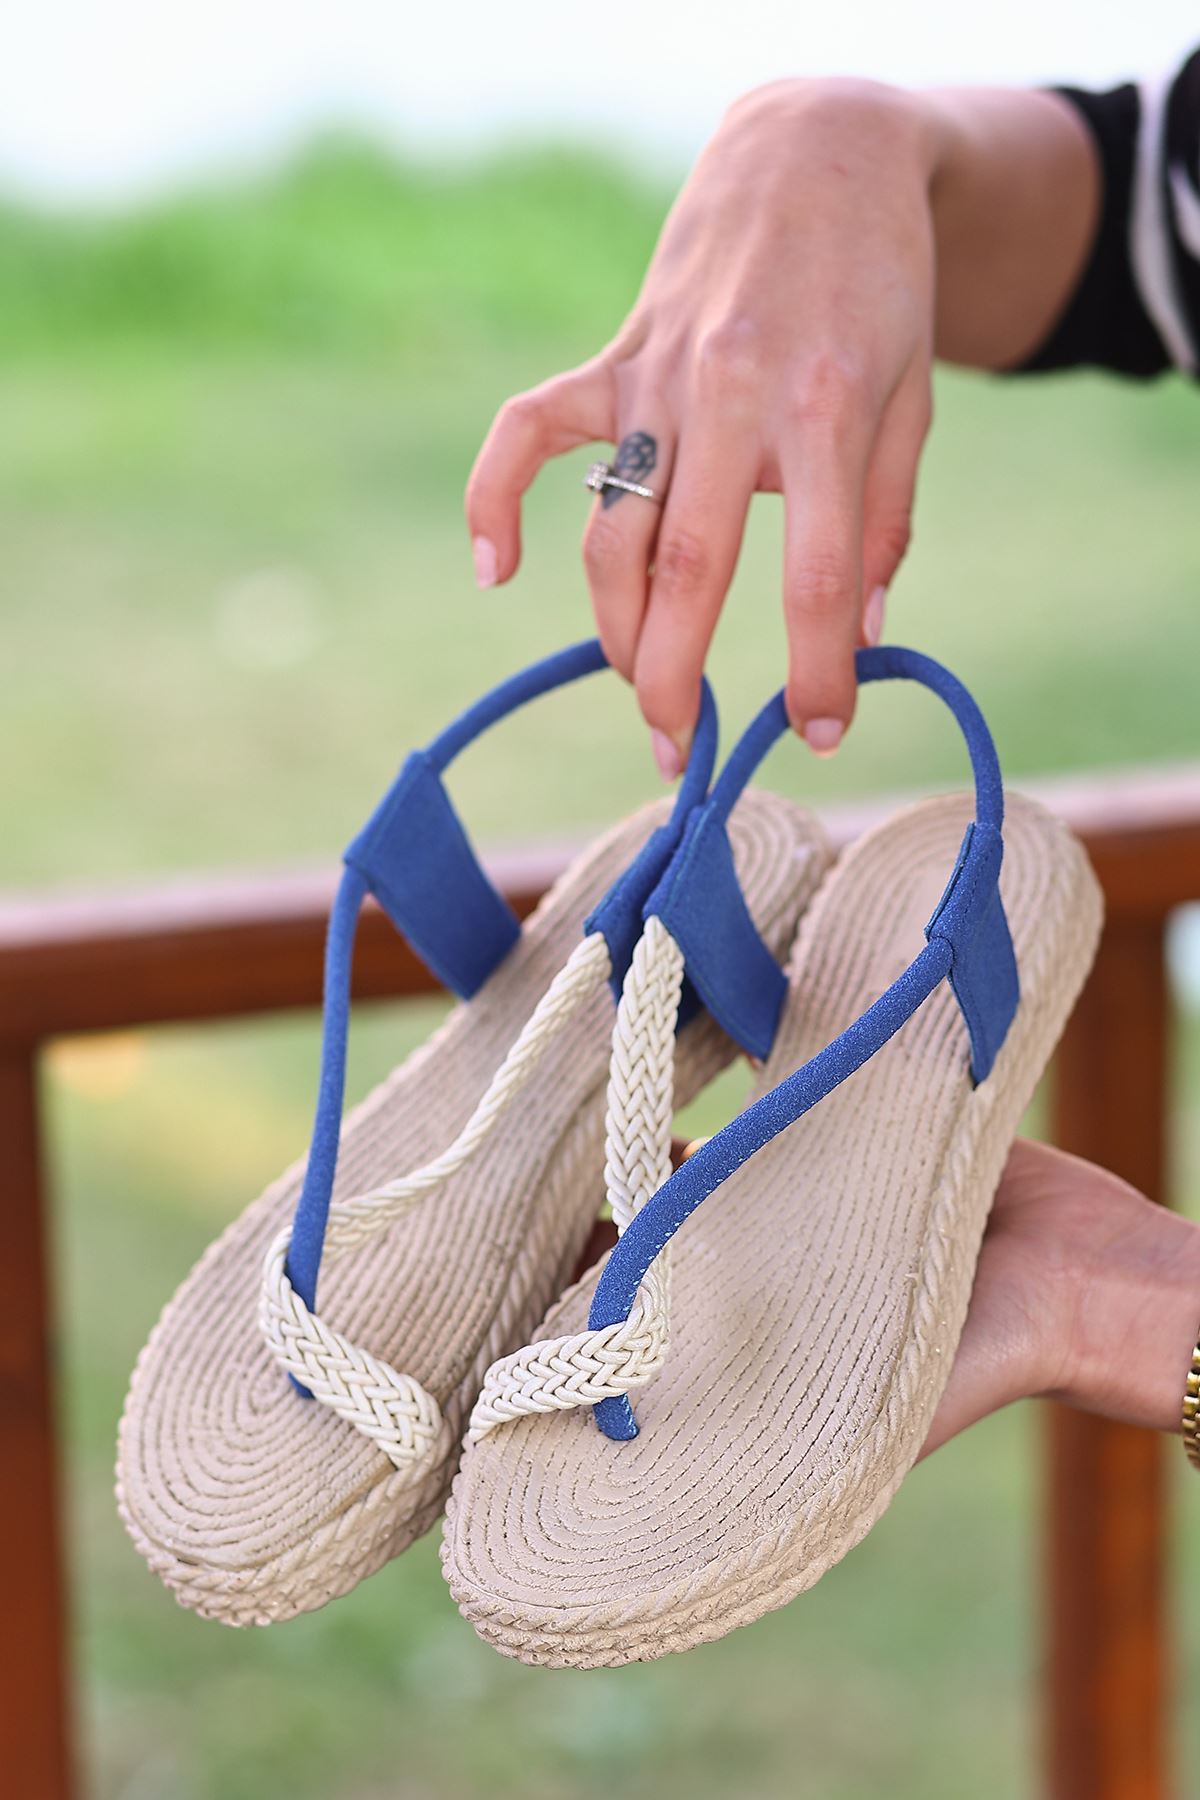 Blue Women's Sandals with Wicker Toe Cap